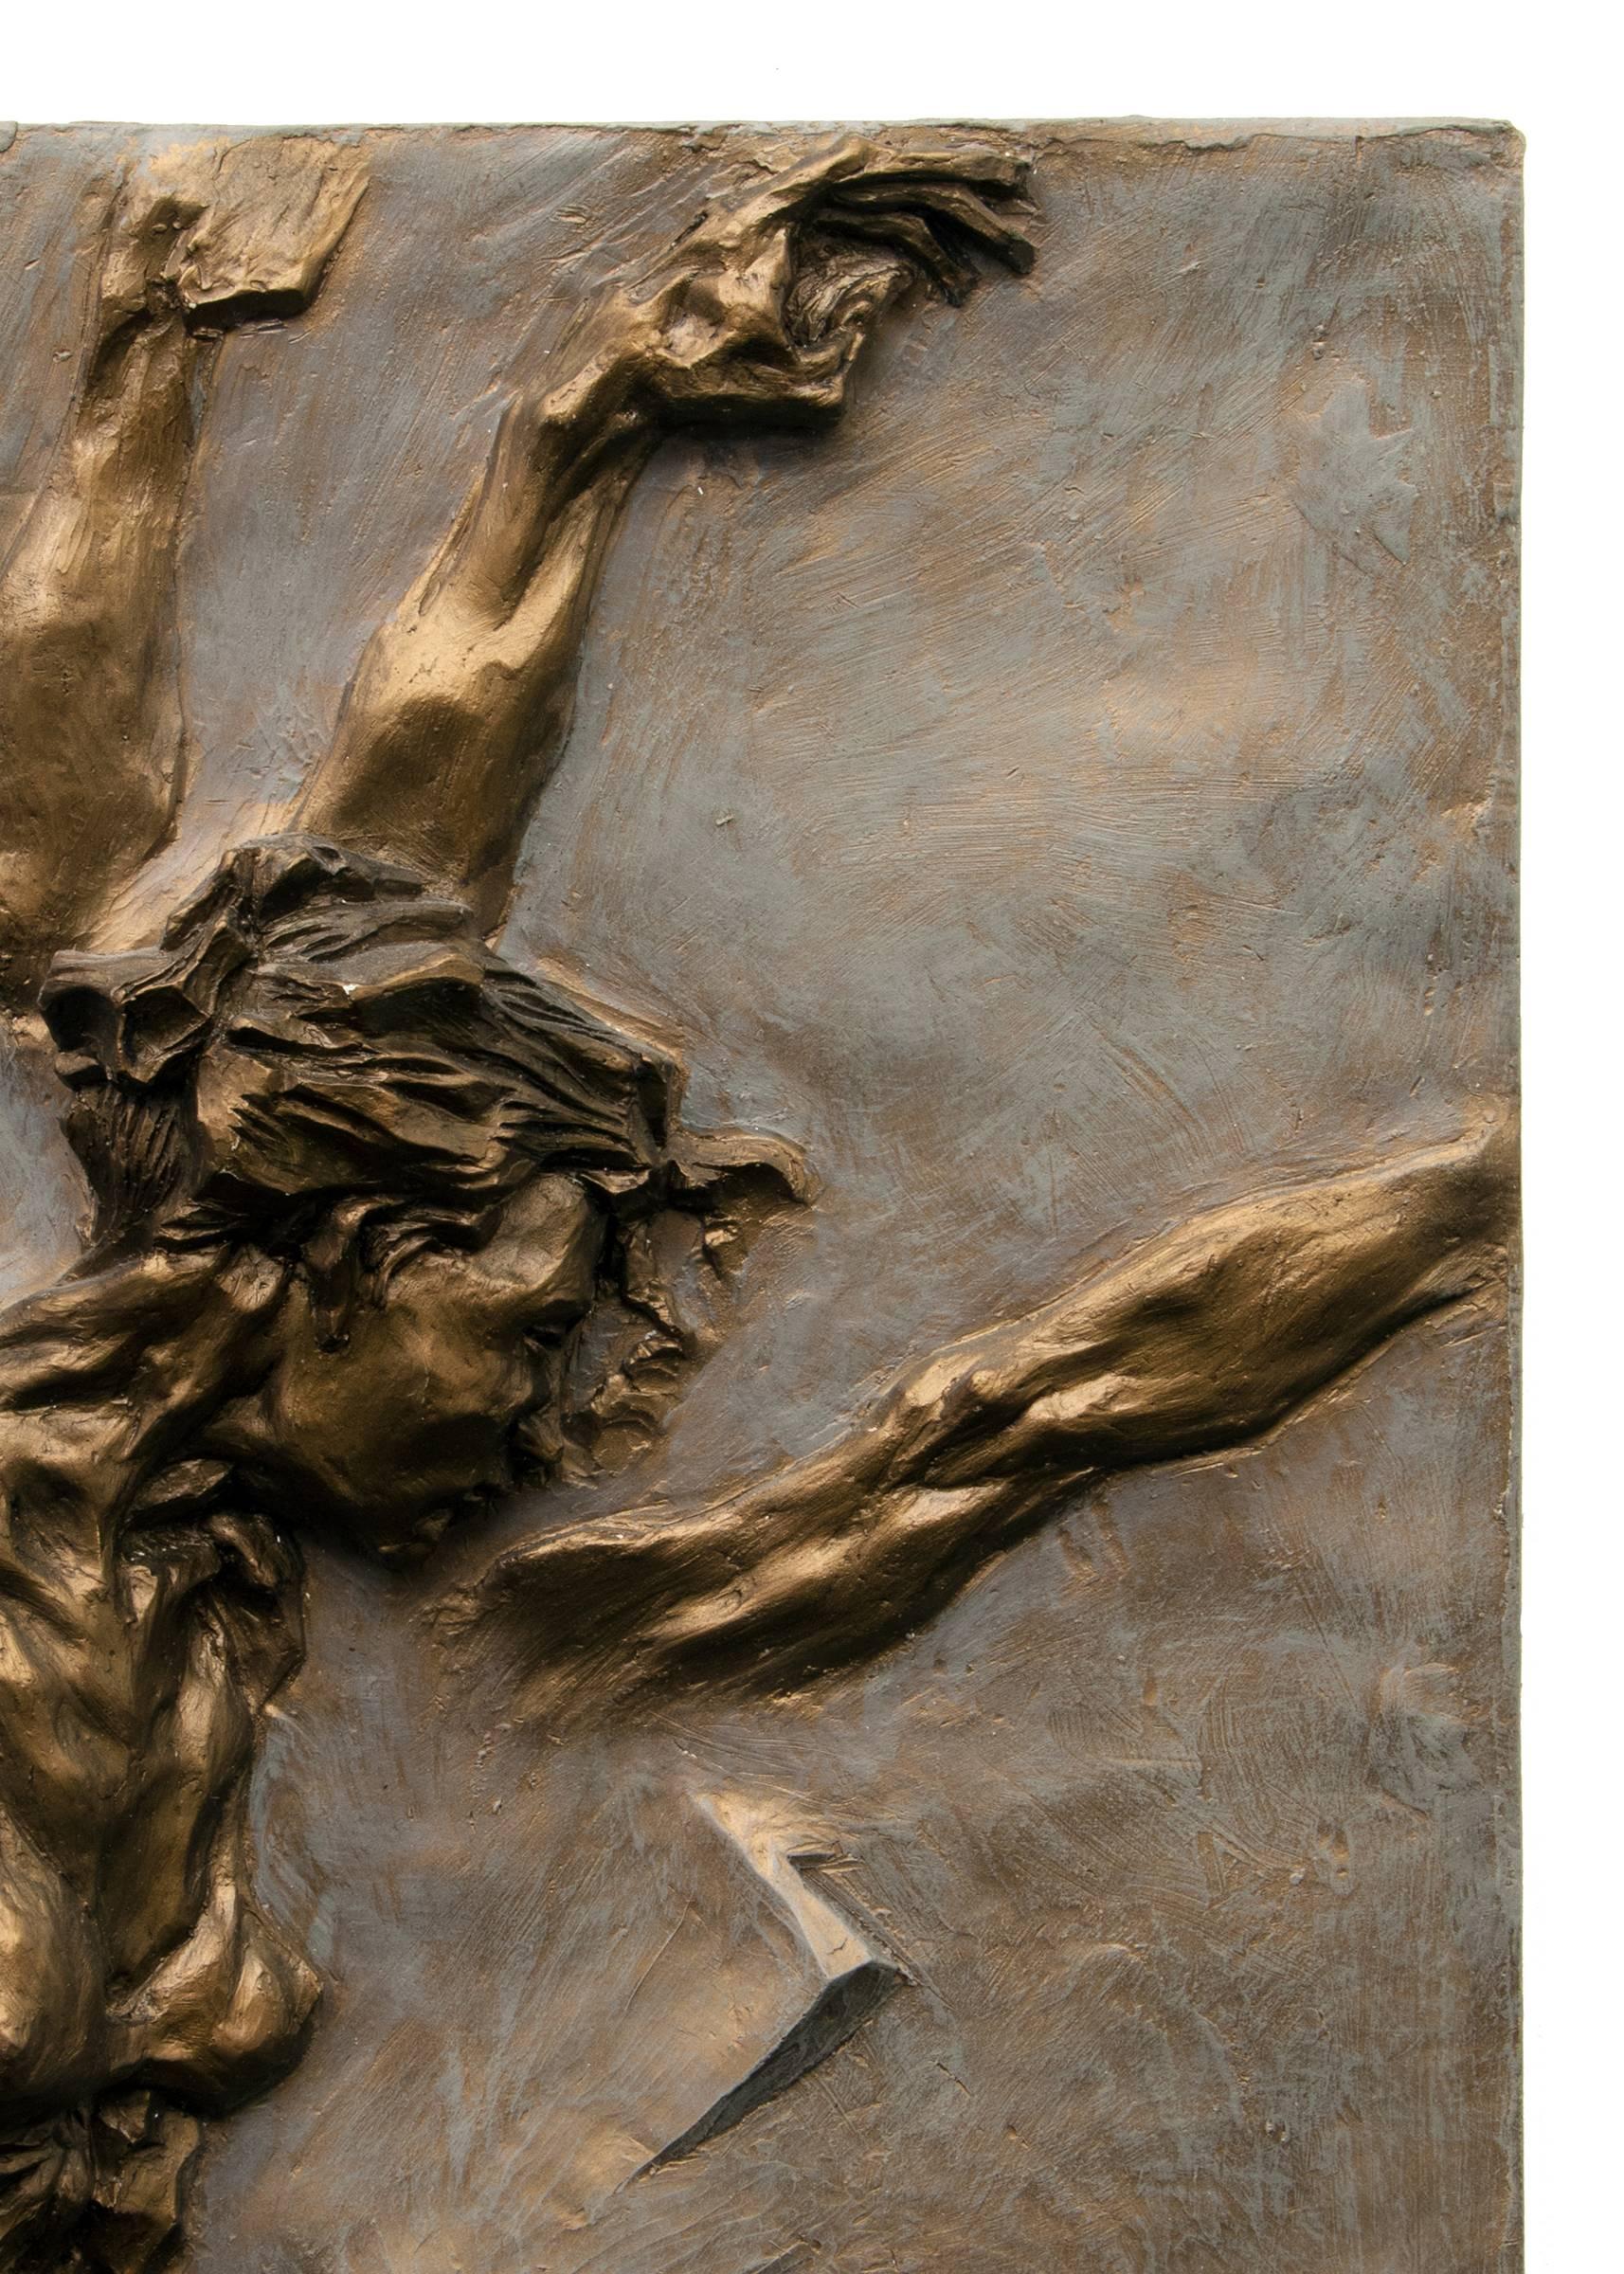 Eine figurative Basrelief-Skulptur einer Balletttänzerin, die sich in arabesker Pose bewegt, von Eric Bransby (1916-1920), einem Künstler aus Colorado/Missouri. Bronze, Polymer-Foronguss.  
Provenienz: Collection'S des Künstlers
Eric James Bransby